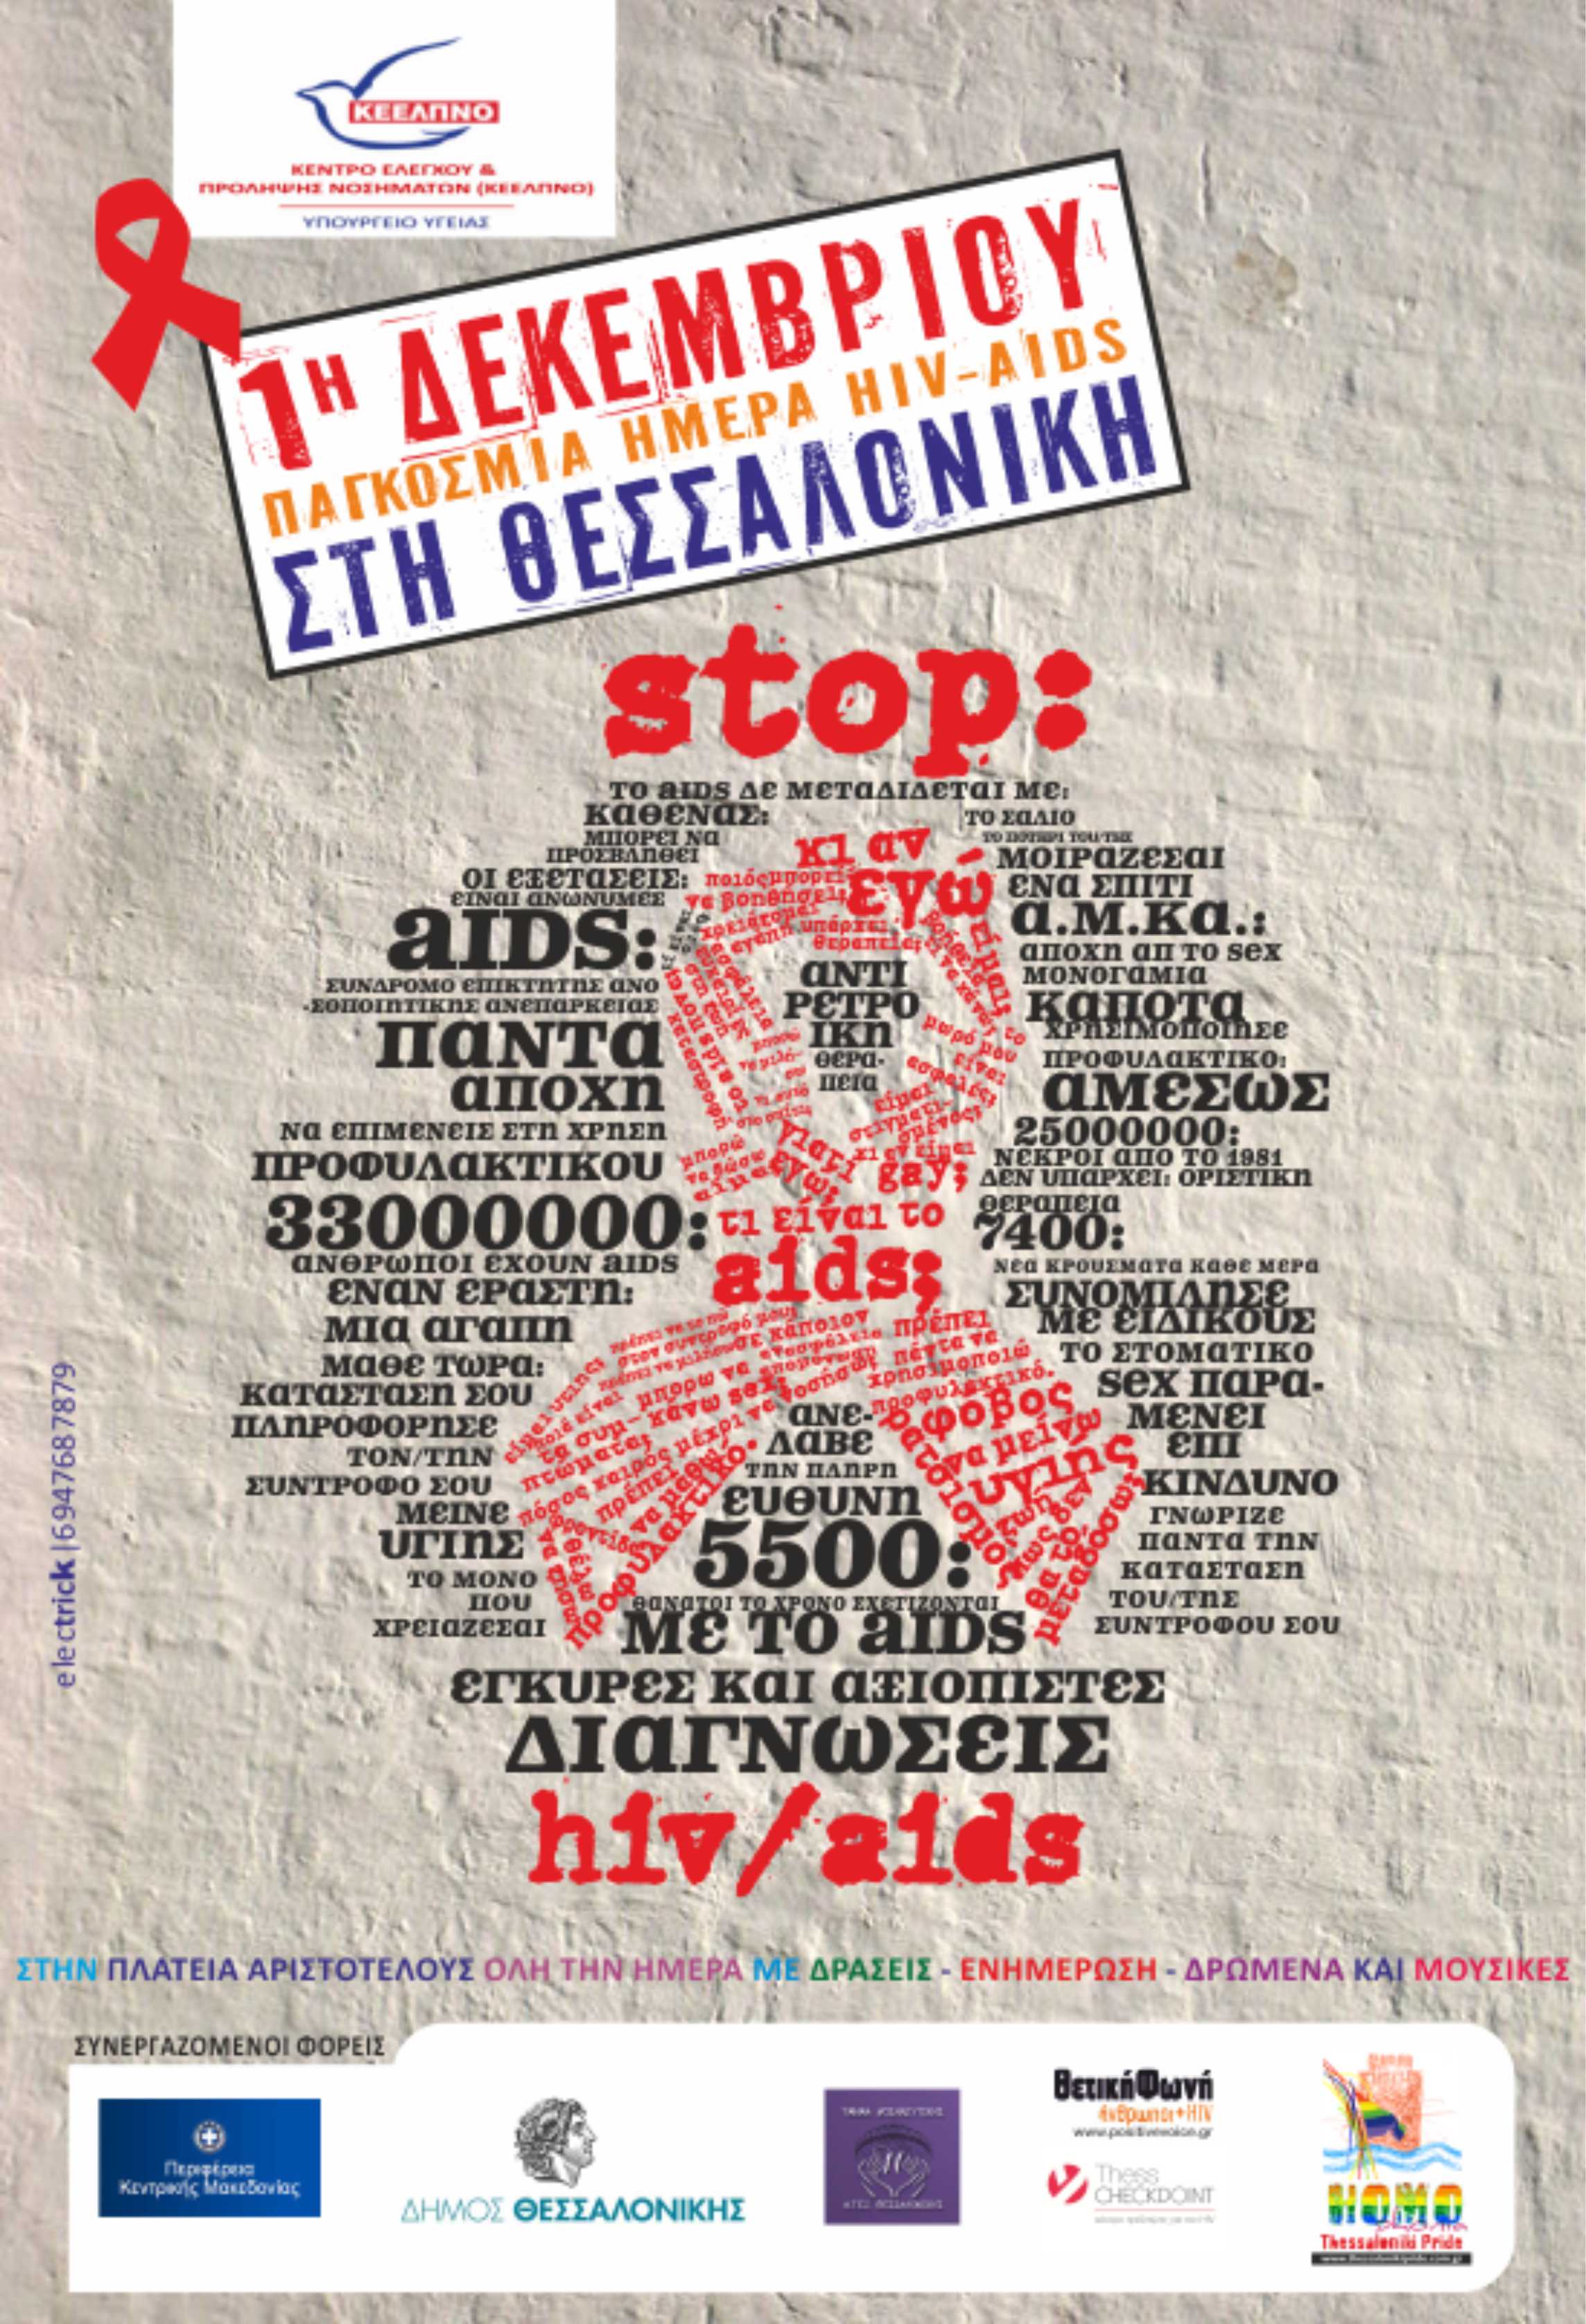 Εκδηλώσεις για την 1η Δεκέμβρη, Παγκόσμια Ημέρα Aids